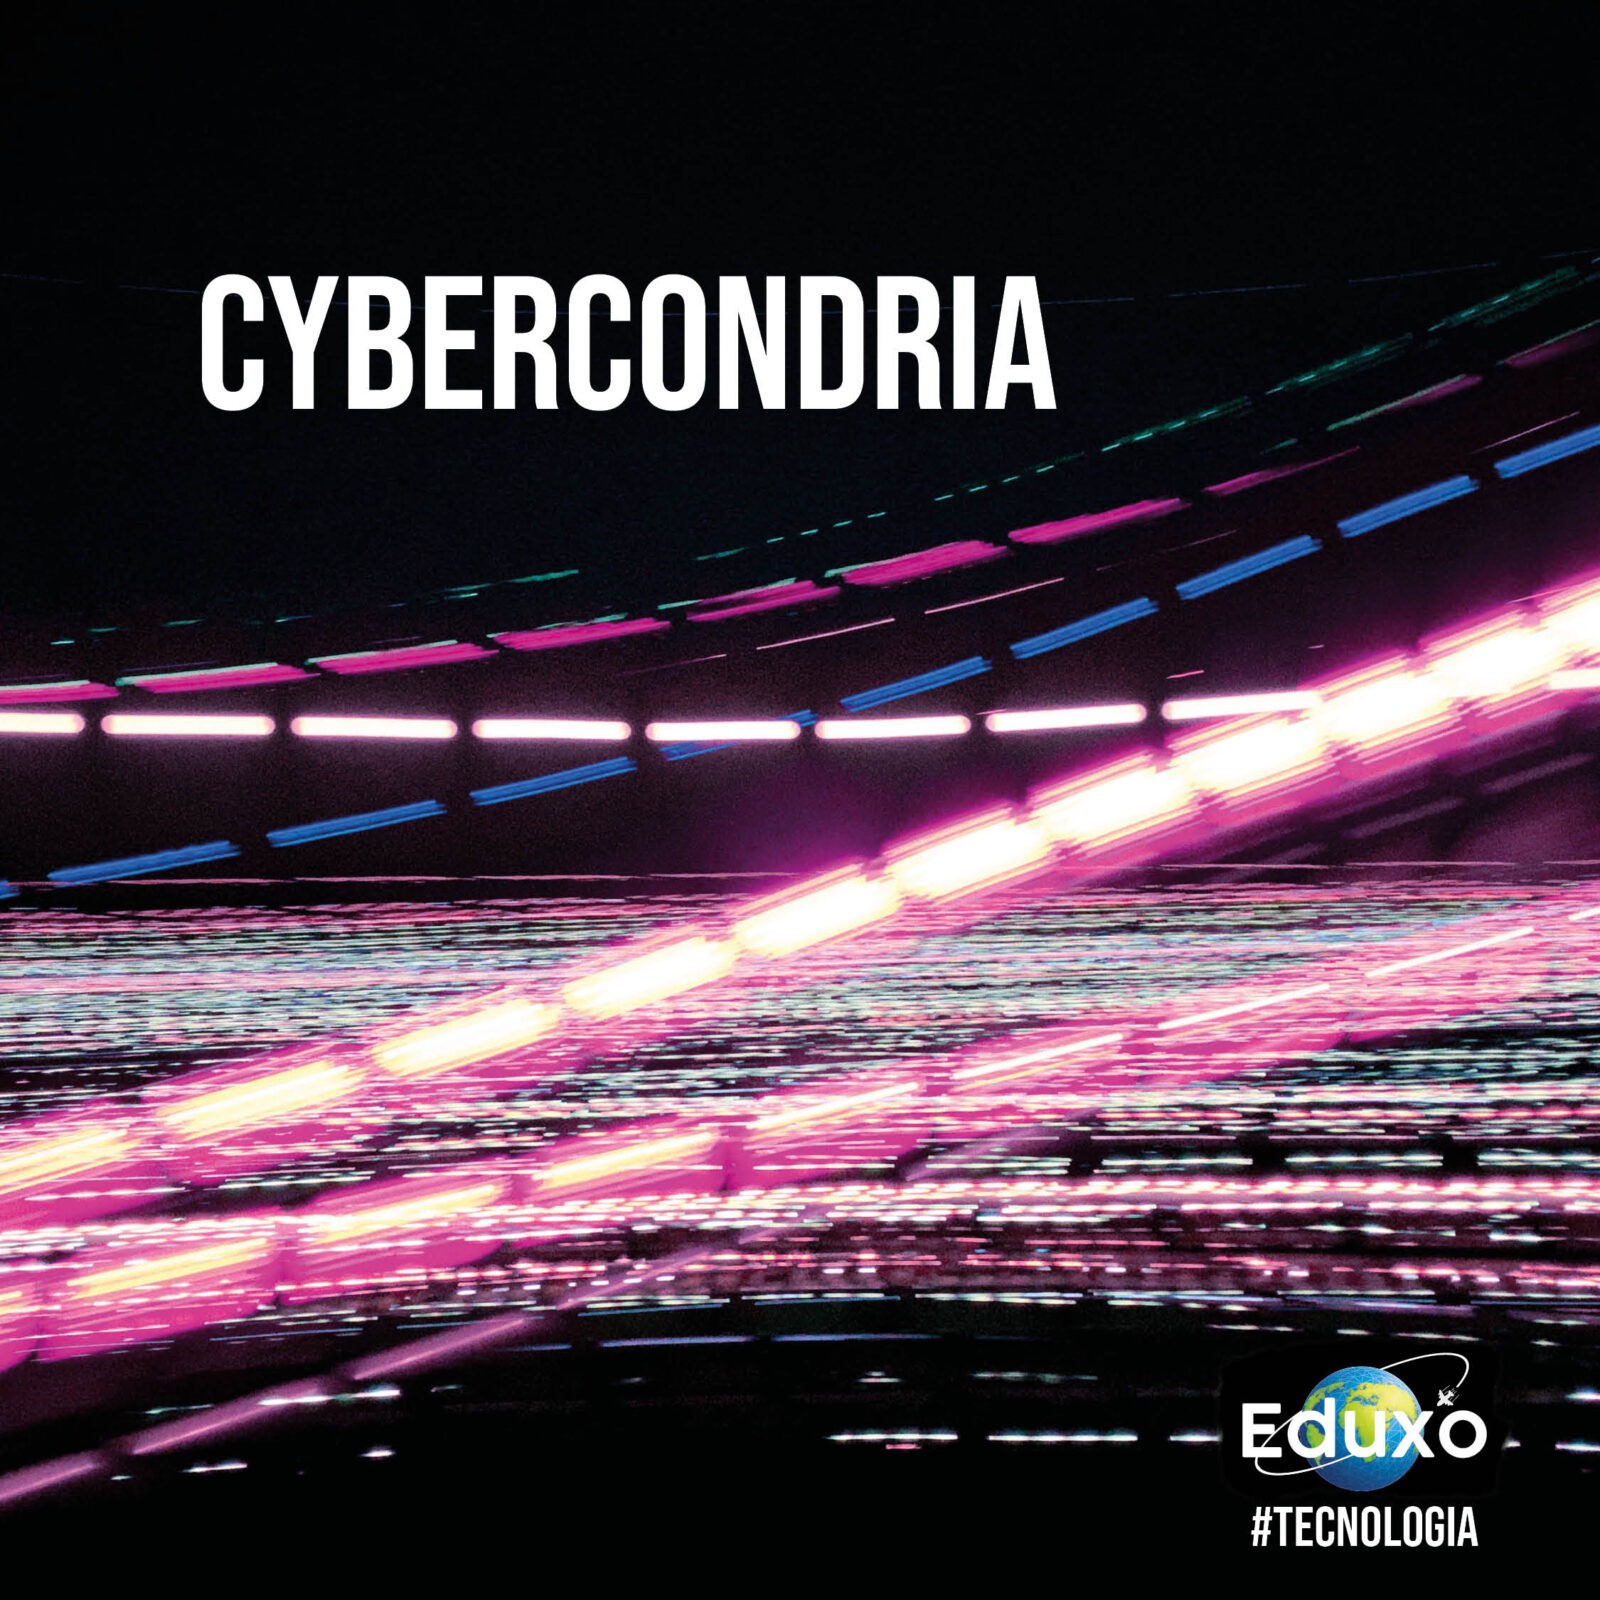 Cybercondria